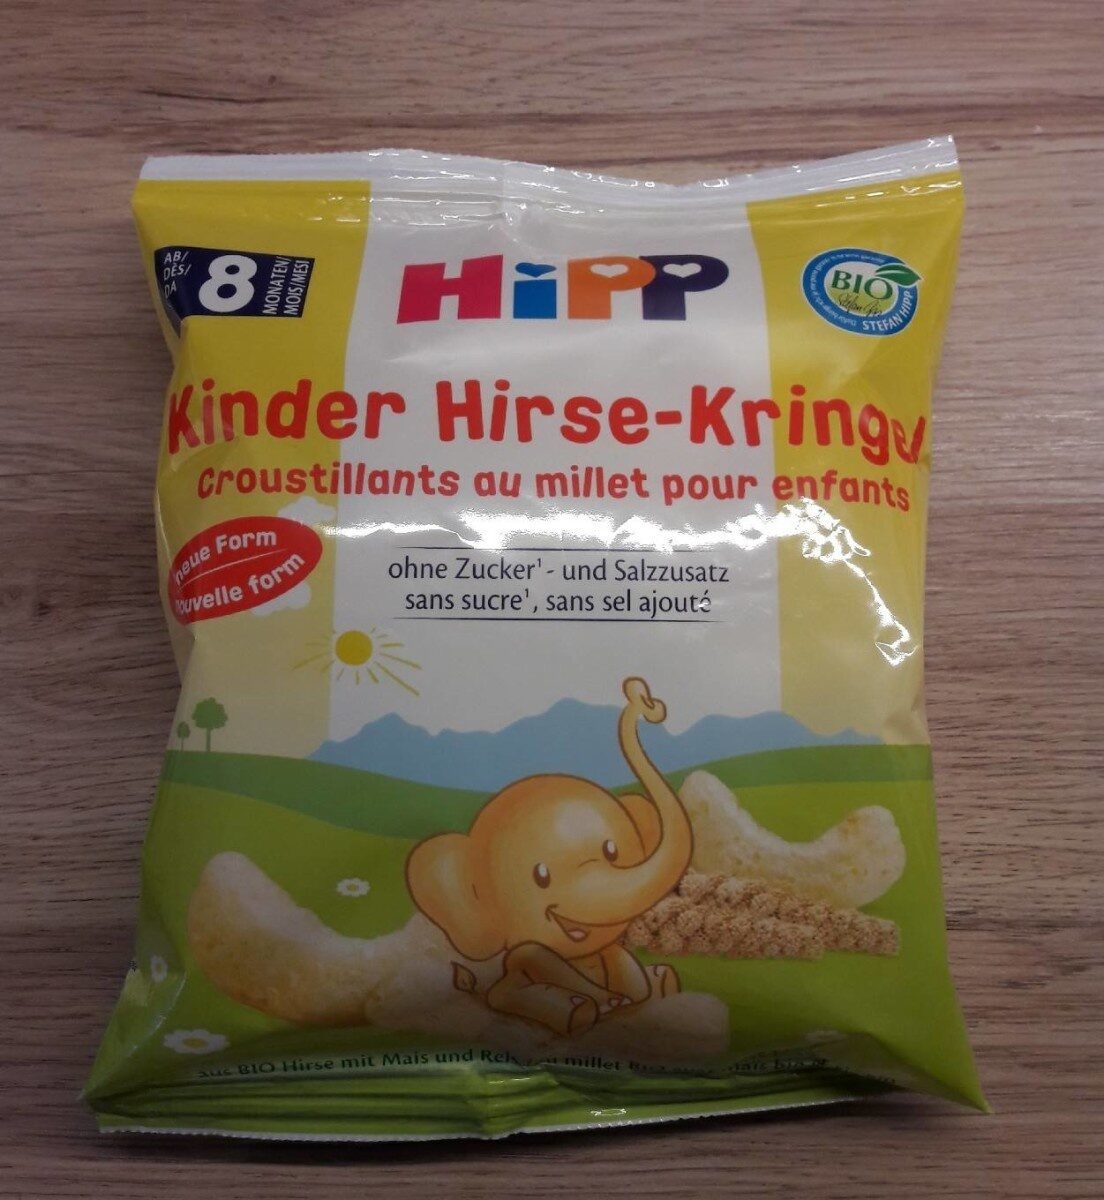 Croustillants au millet pour enfants - Produkt - fr